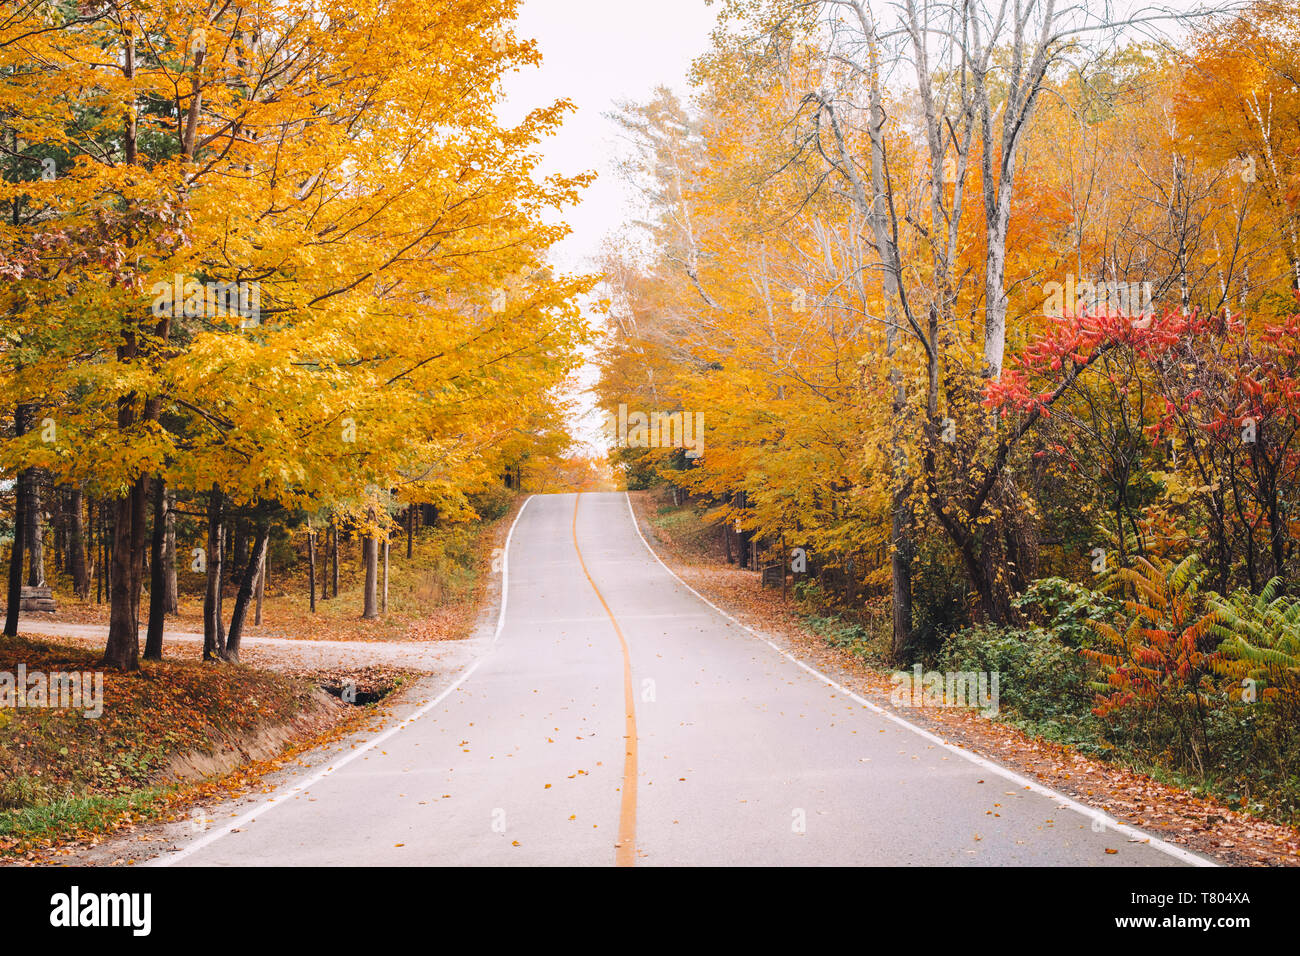 À vide, abandonné dans la rue autumn forest park avec du jaune orange rouge les feuilles des arbres. Belle saison d'automne, à l'extérieur. Banque D'Images